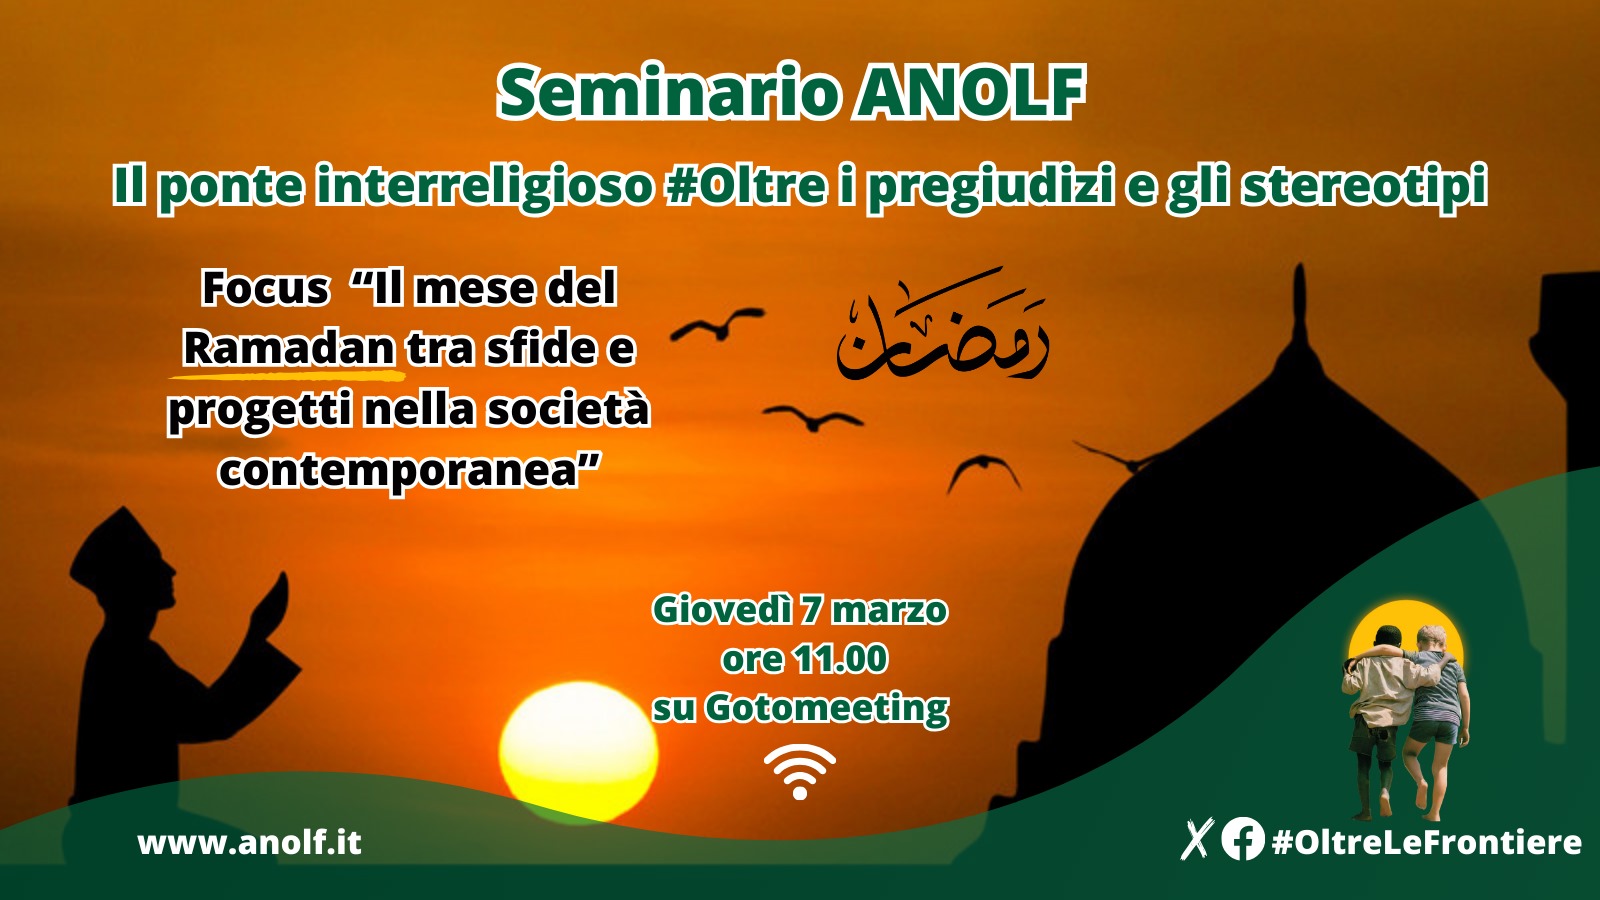 Seminario ANOLF. Il ponte interreligioso #Oltre i pregiudizi e gli stereotipi